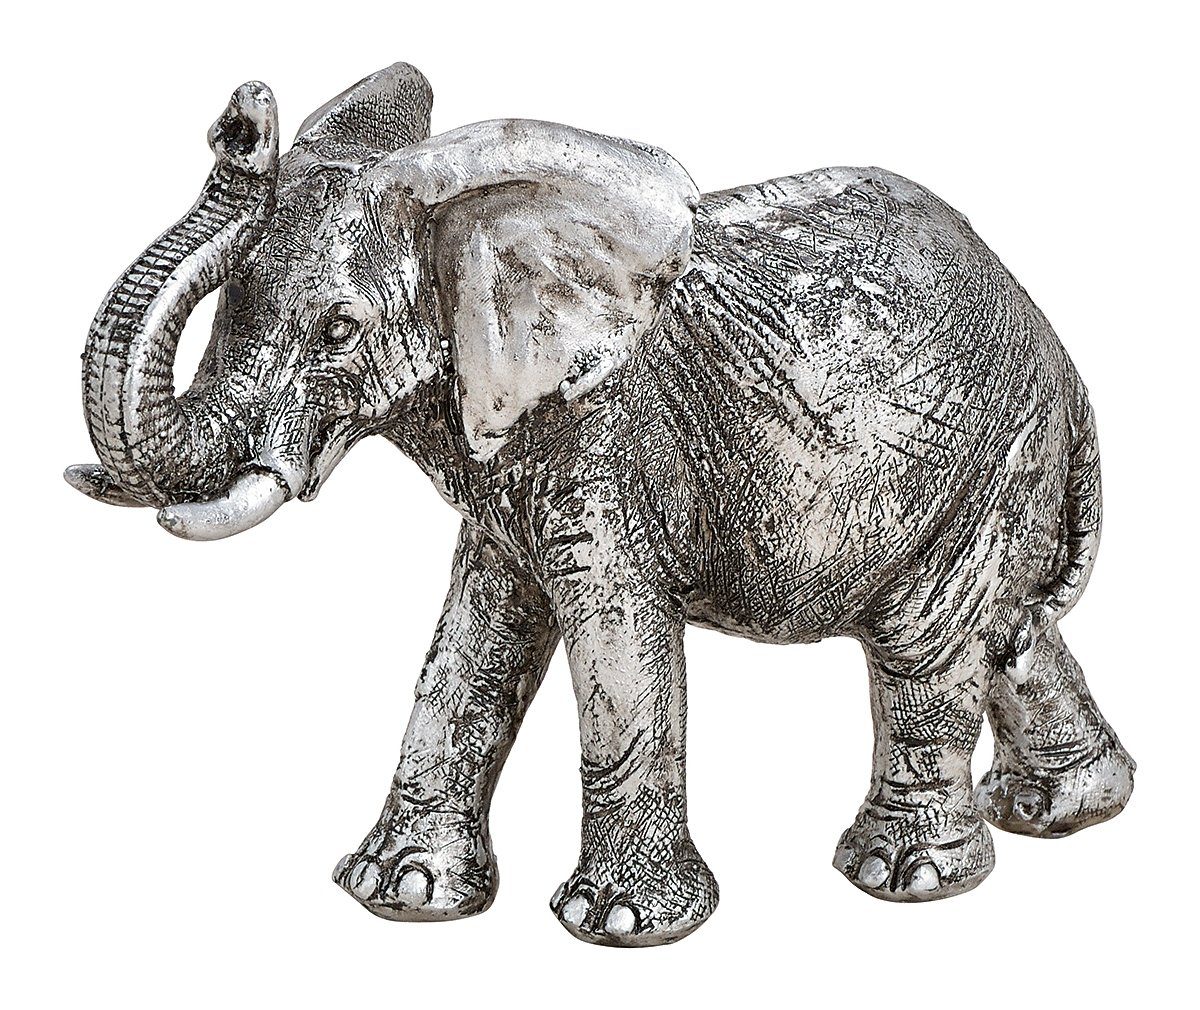 NO NAME Tierfigur Baby-Elefant, silber, B 16 cm, Tierfigur, Elefant-Figur, Dekofigur, Sammlerfigur, Weihnachtsfigur | Tierfiguren